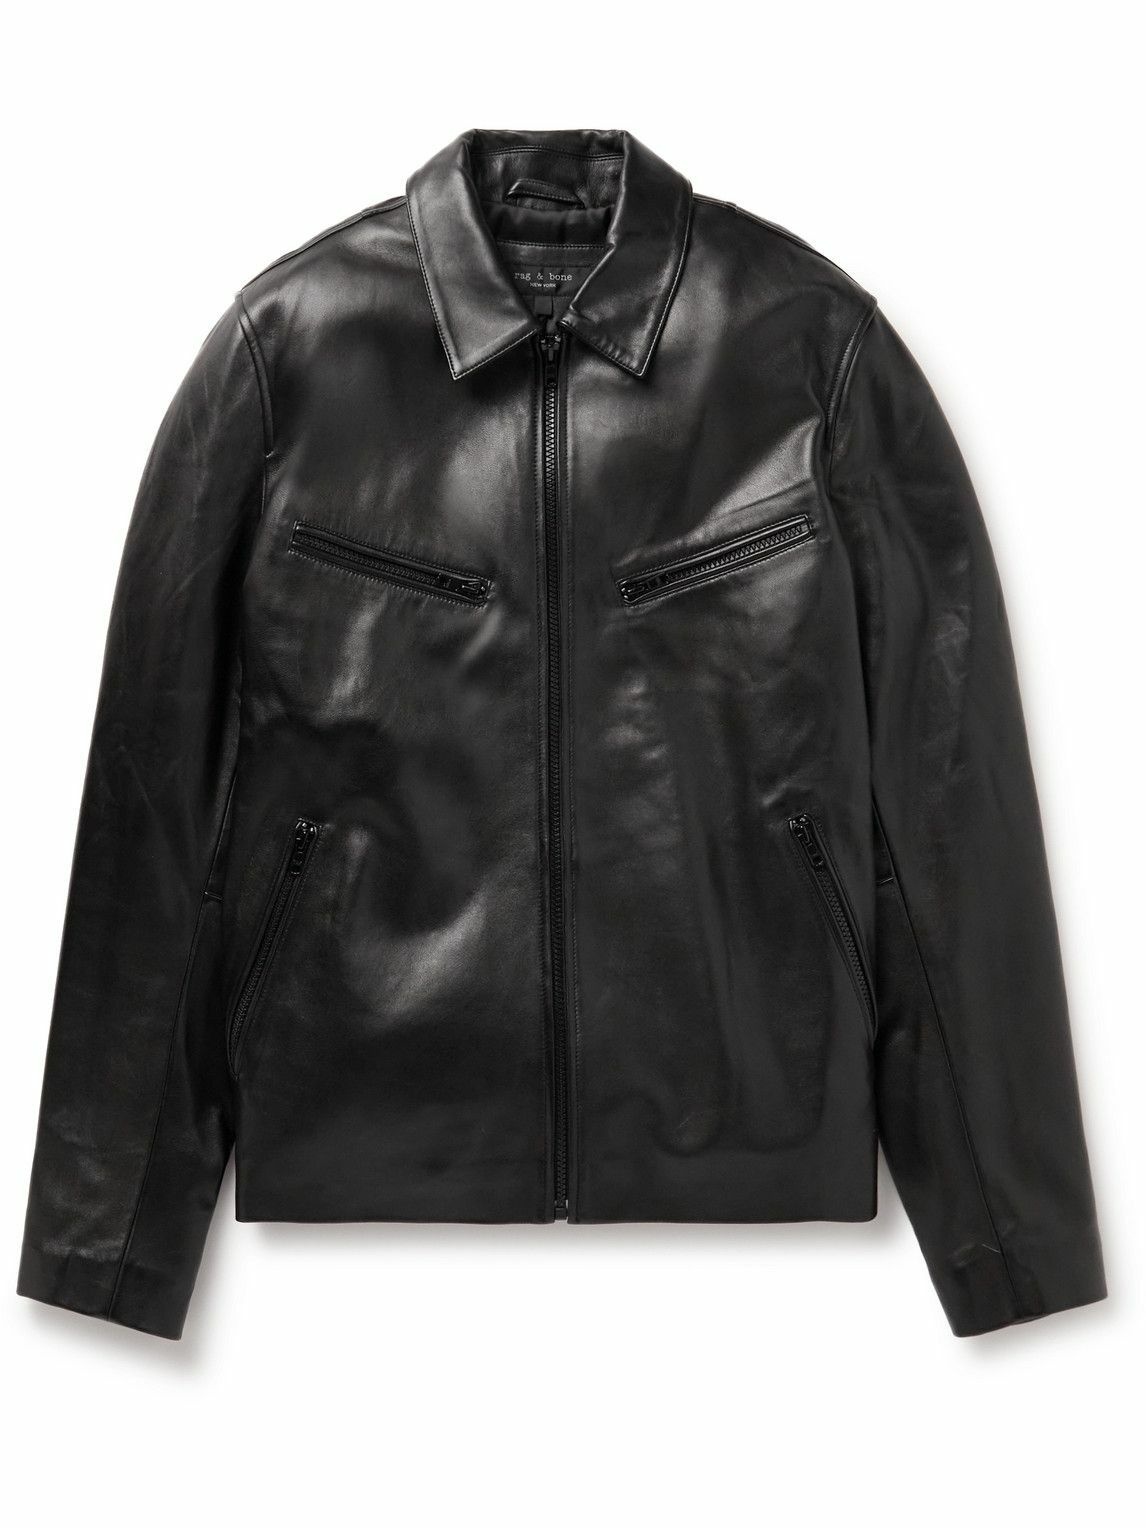 Photo: Rag & Bone - Oliver Leather Jacket - Black